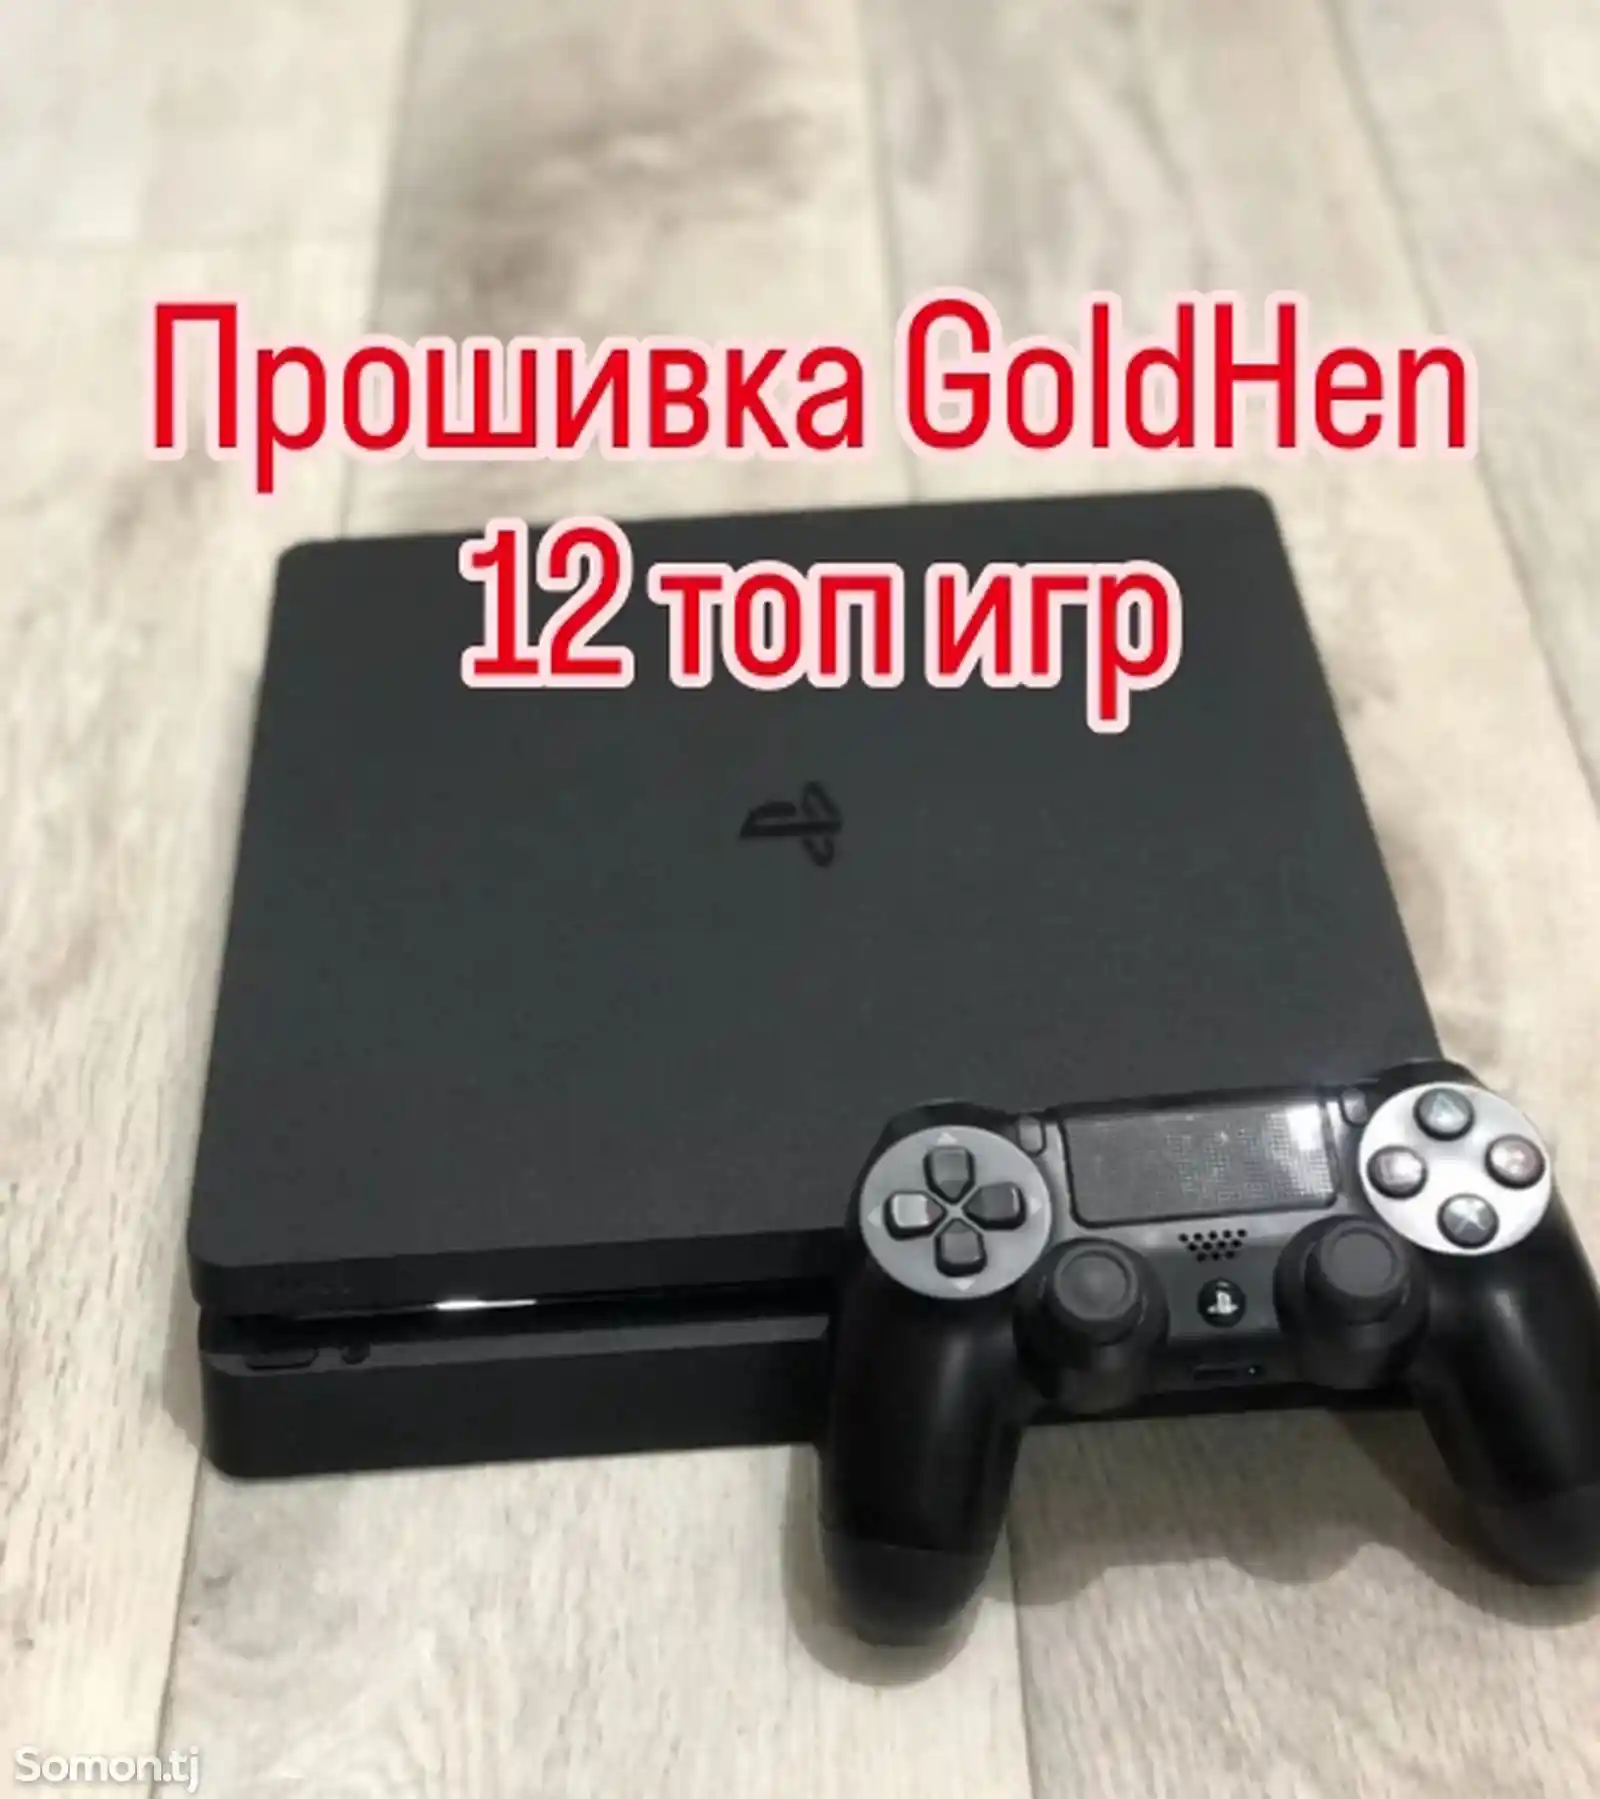 Игровая приставка Sony PlayStation 4 Slim Goldhen + 12 топ игр 2024-1